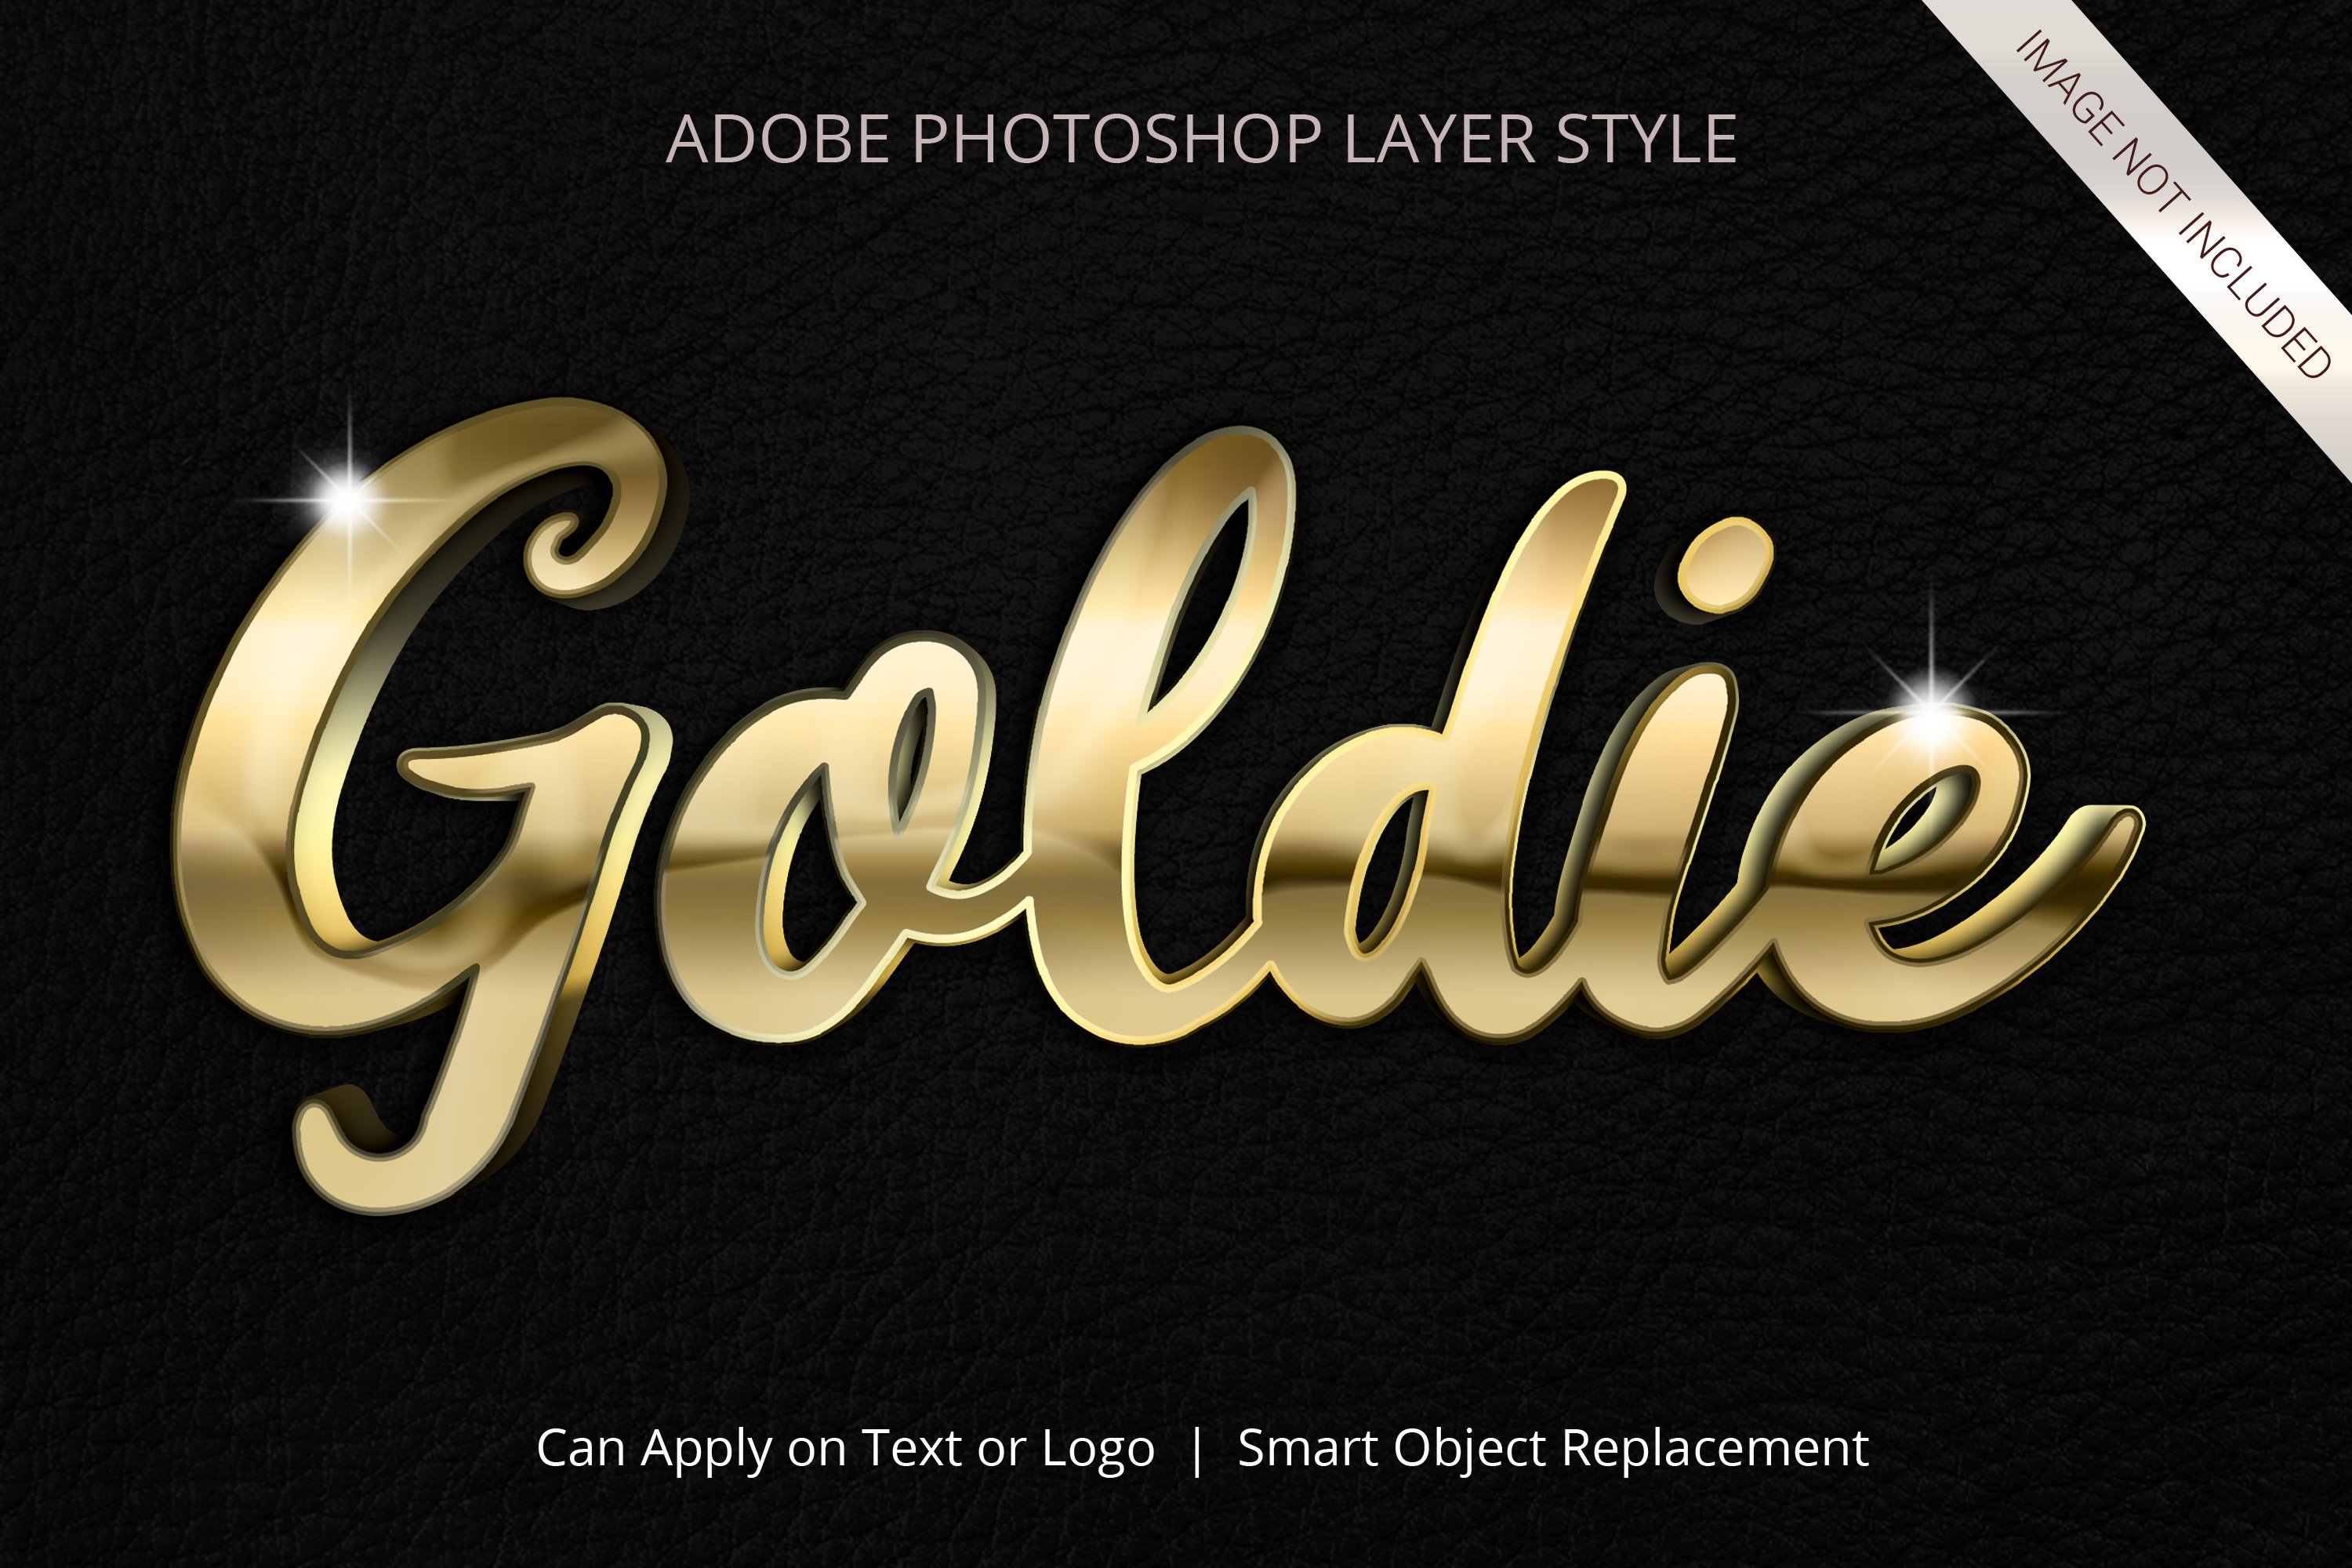 adobe photoshop text style chrome metallic 15 938